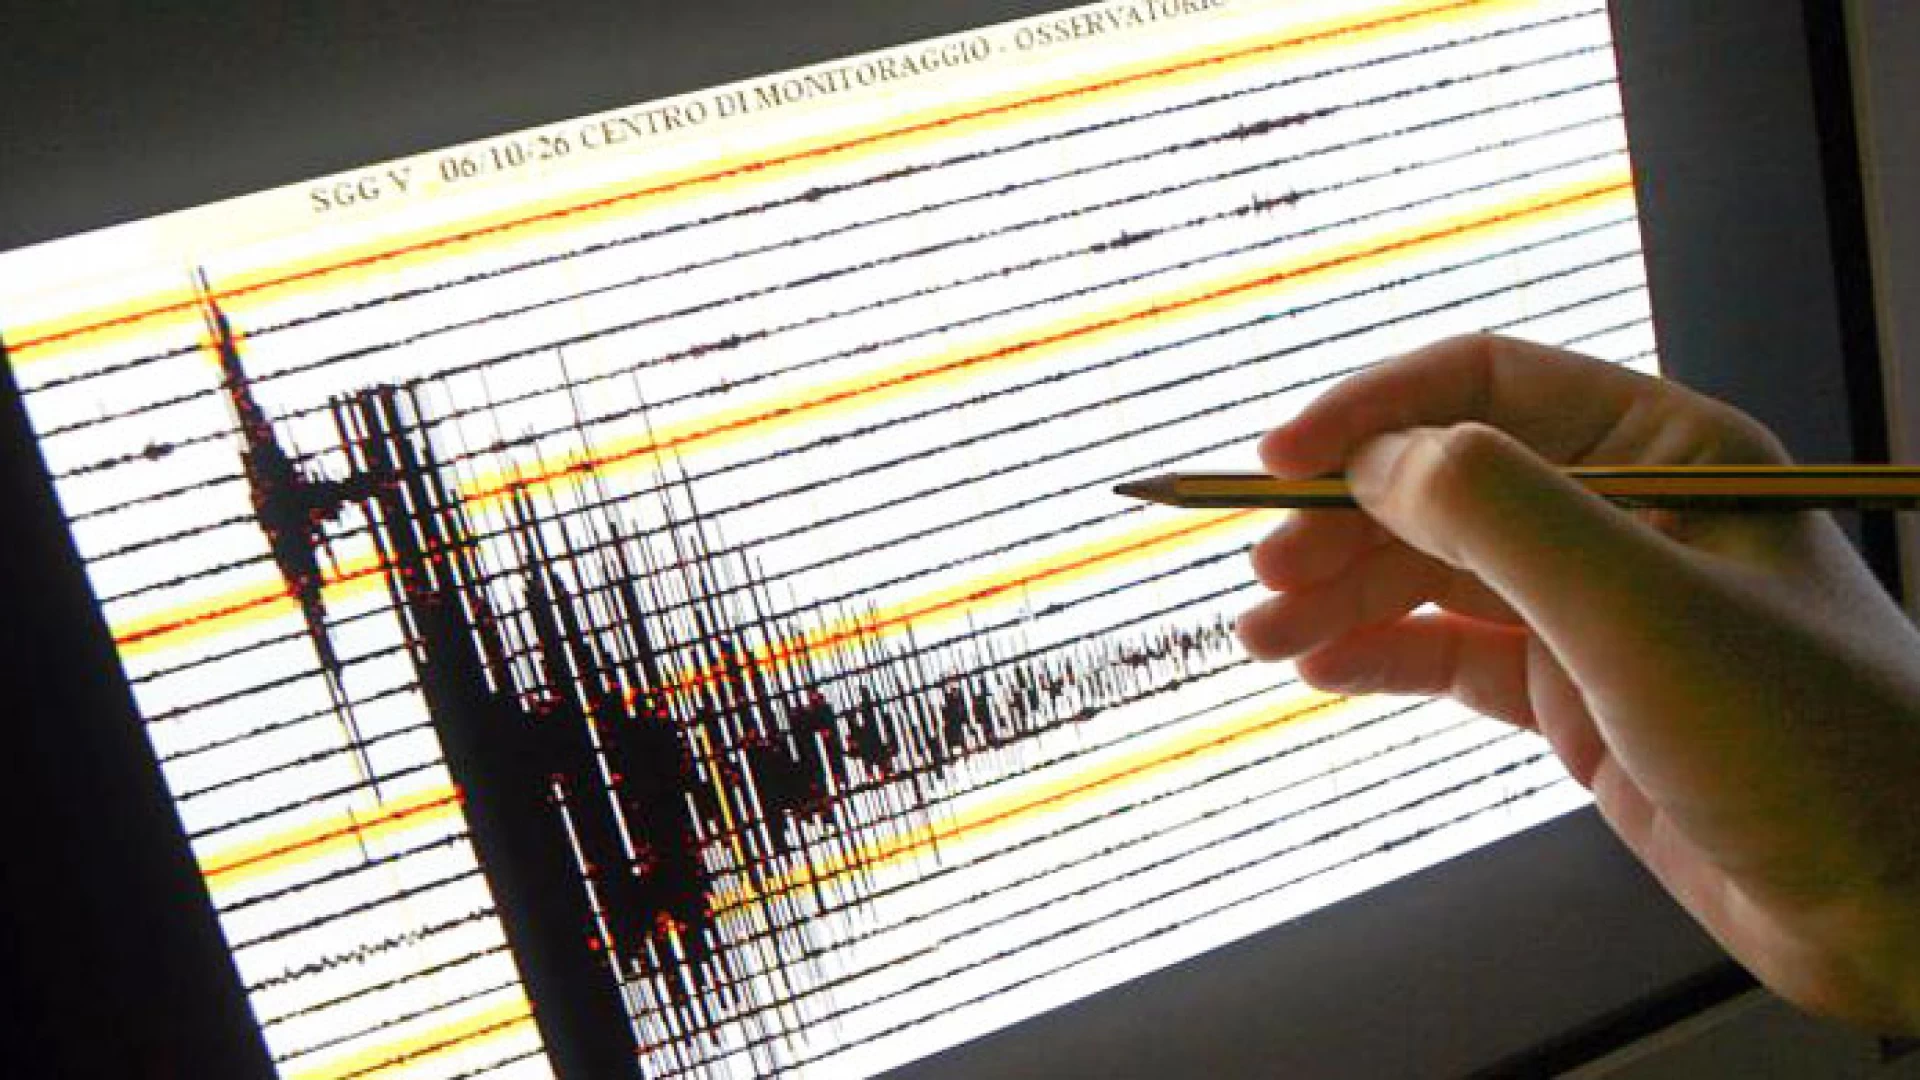 Isernia: la terra trema ancora in Provincia. Alle ore 6:15 una scossa di magnitudo 2.4. Per gli esperti si tratterebbe di normale attività sismica dell’area.